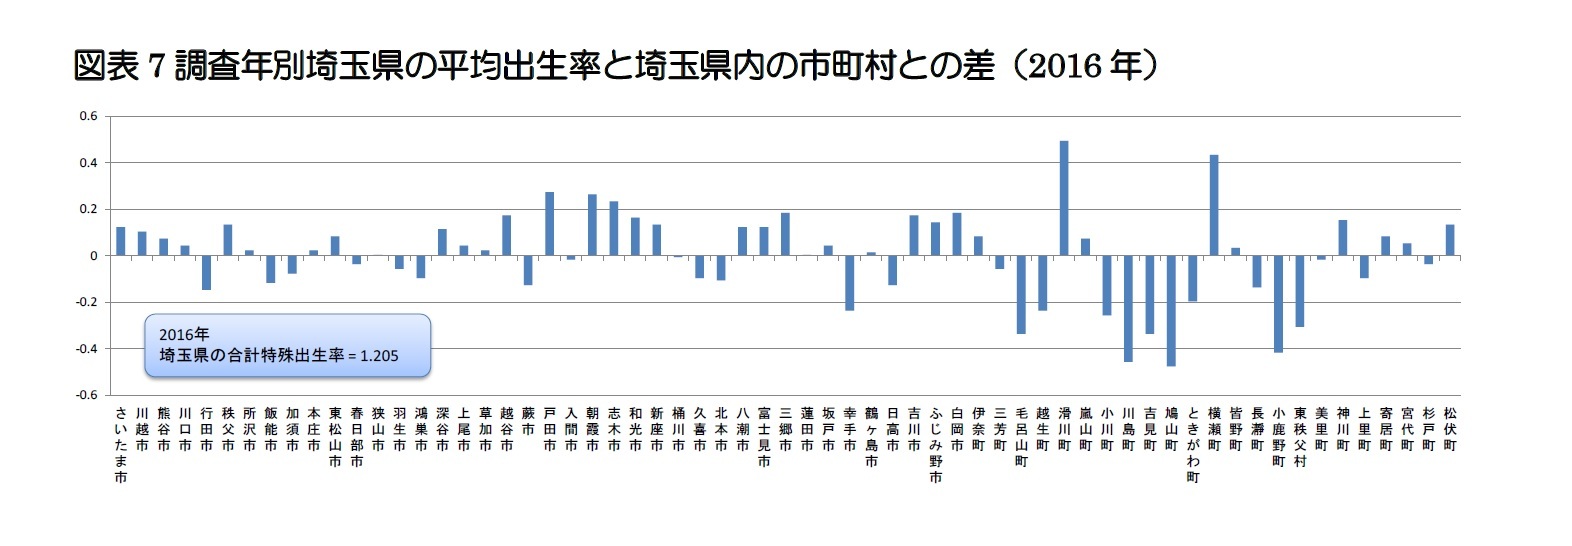 図表7 調査年別埼玉県の平均出生率と埼玉県内の市町村との差（2016年）